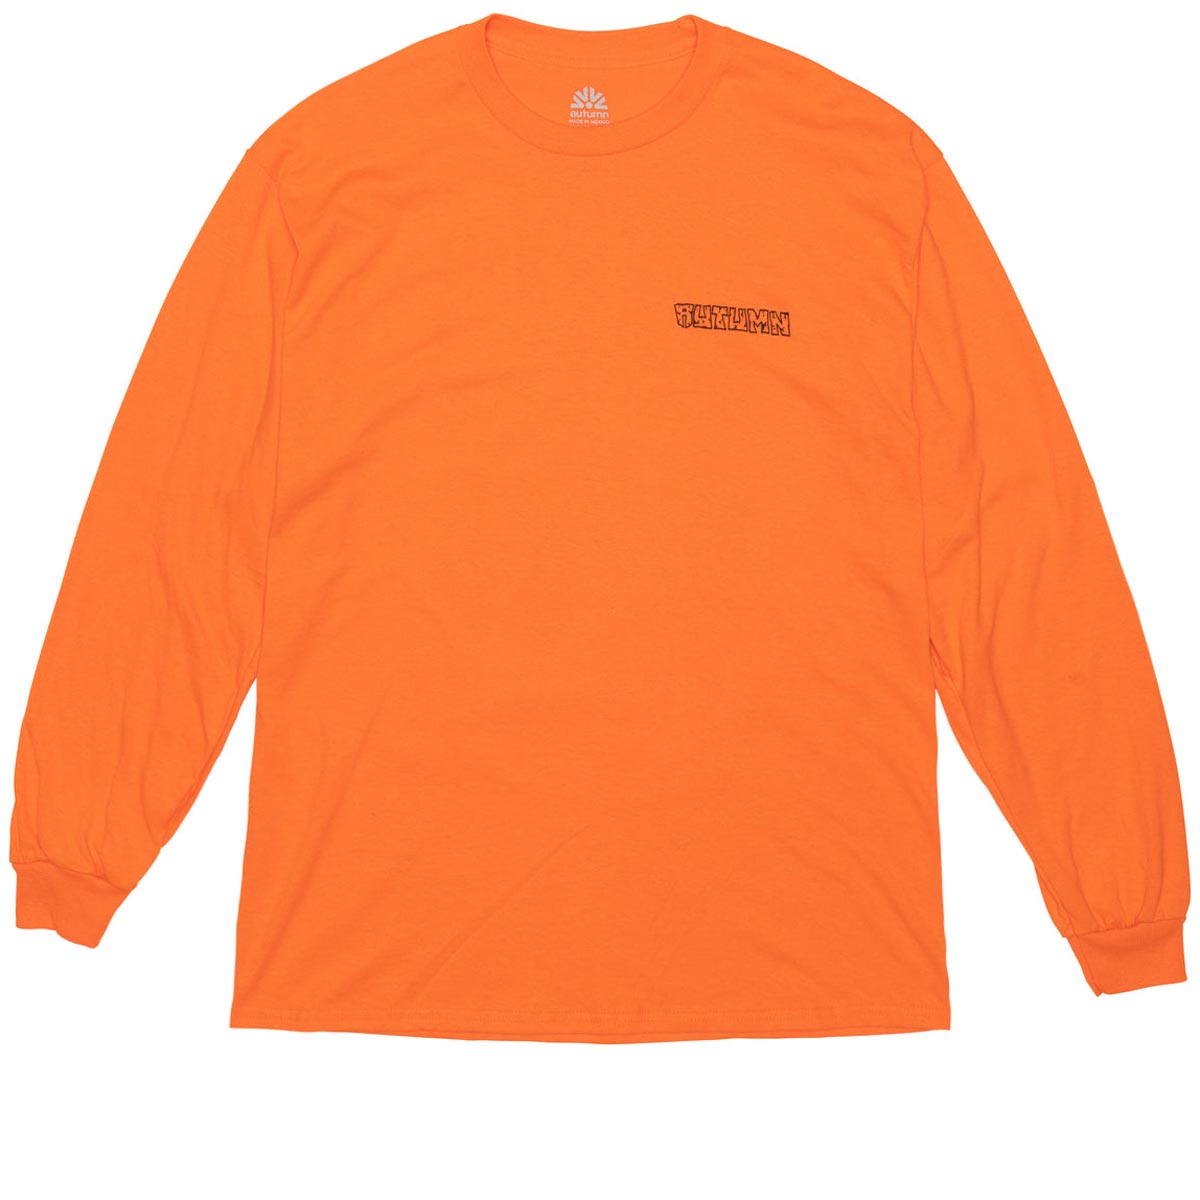 Autumn Flash Long Sleeve Shirt - Orange image 2